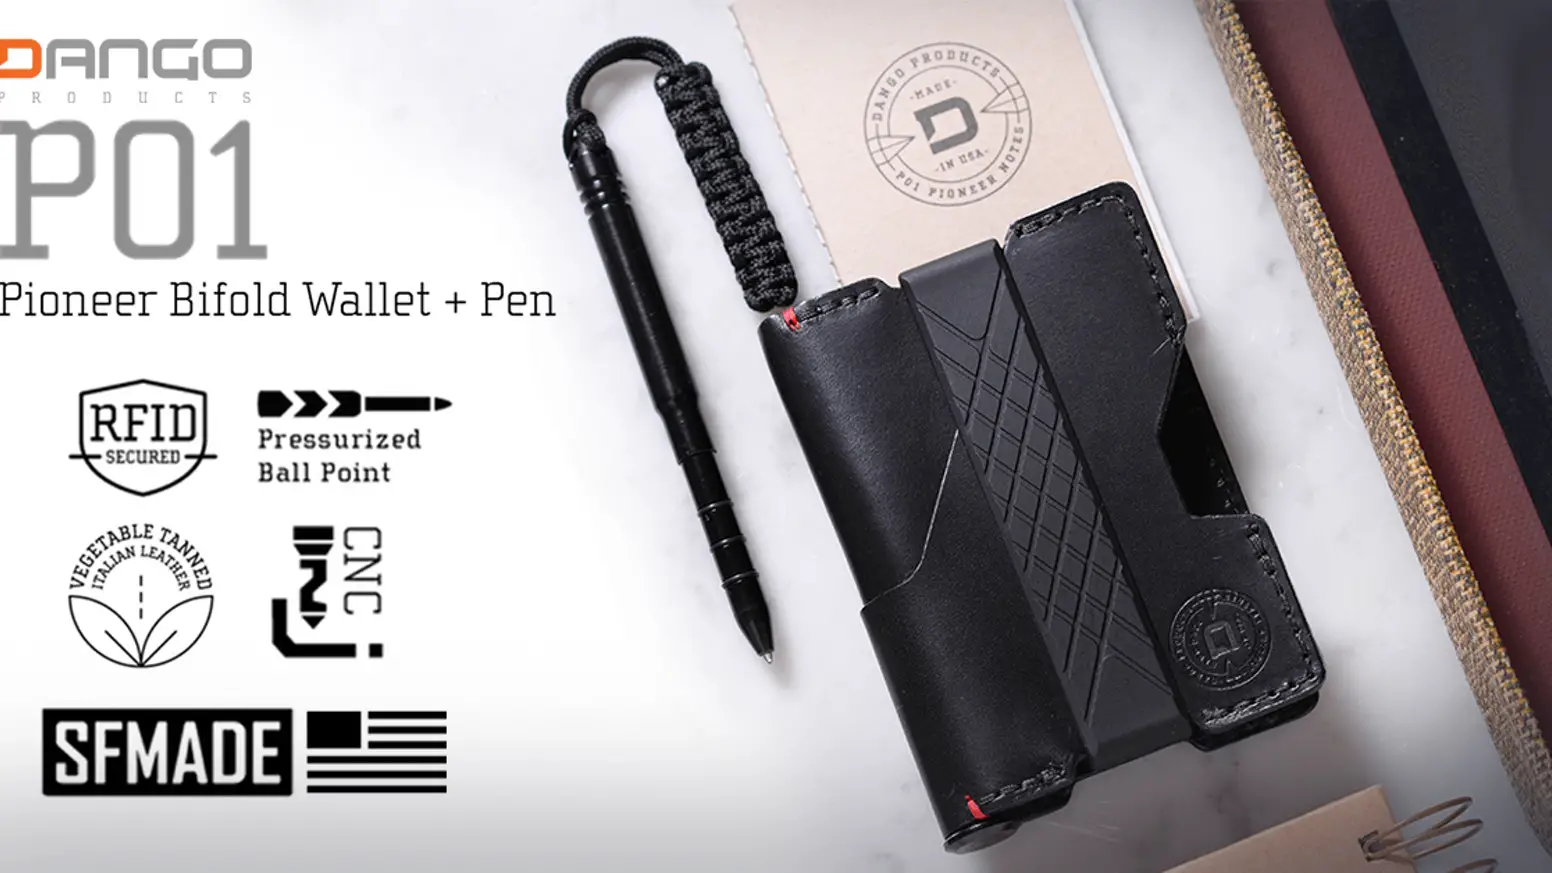 QUICK ENDING! The P01 Pioneer Bifold Wallet & Pen Giveaway